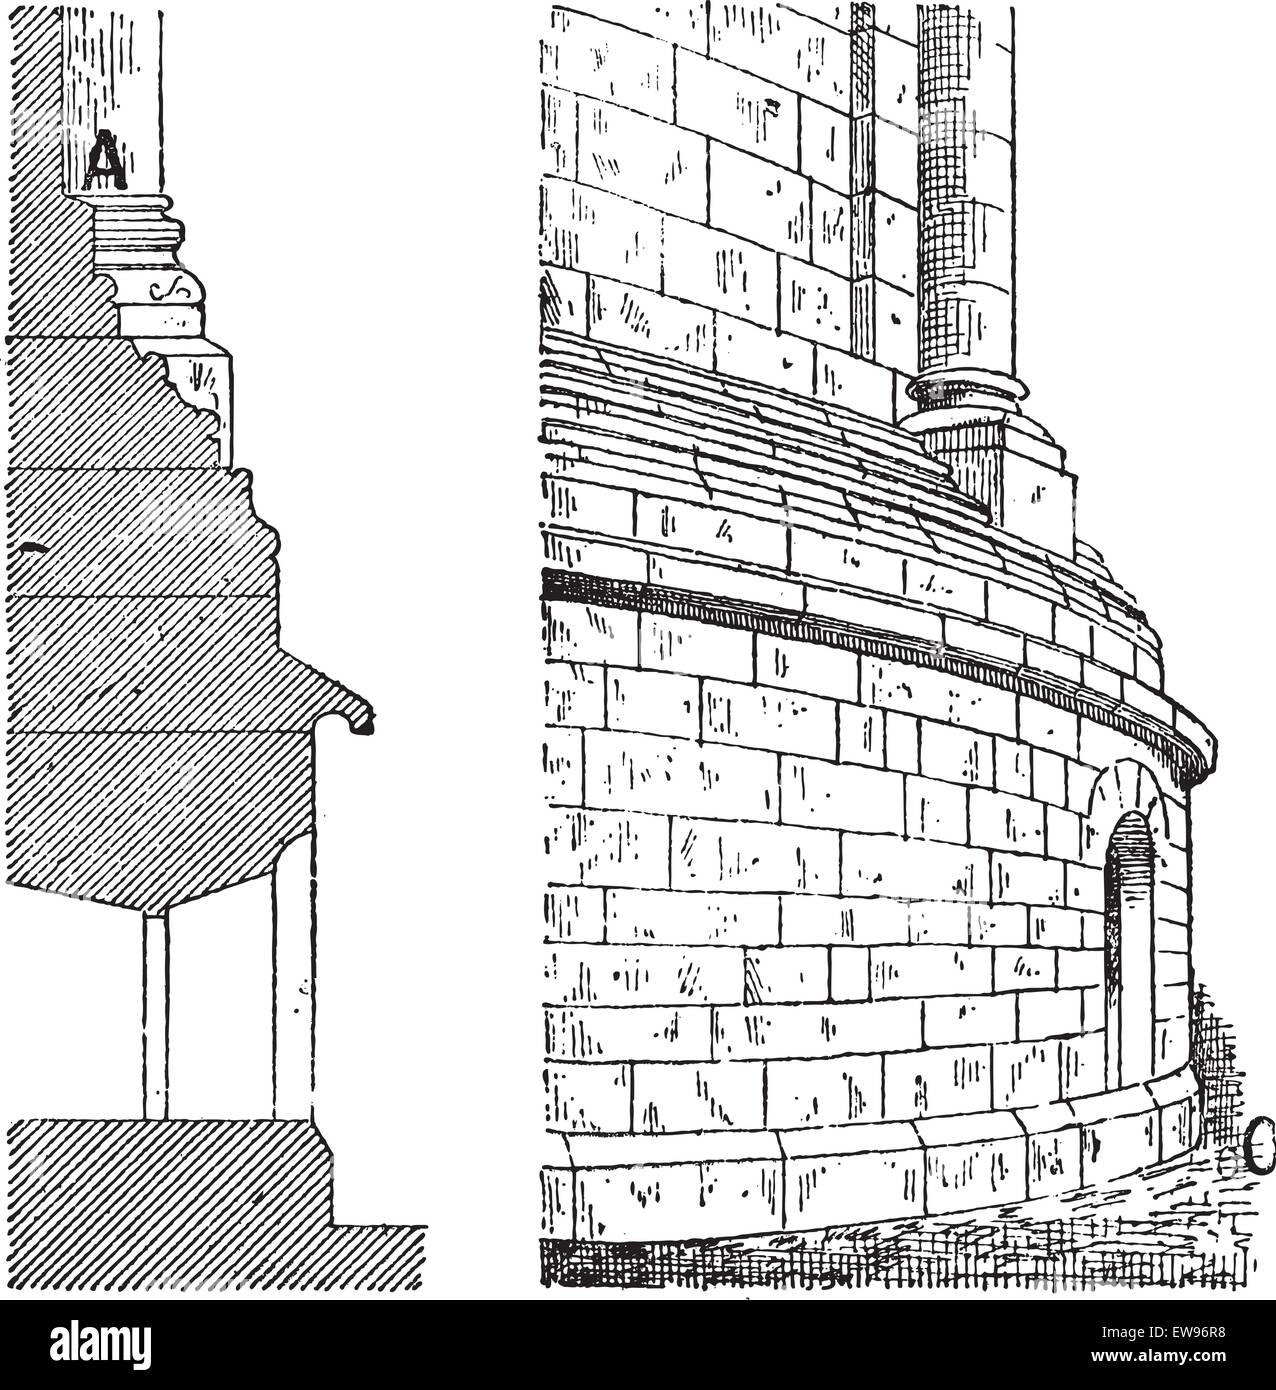 Östlichen Apsis der Kathedrale Turm Profil Ansicht (links) und perspektivische Ansicht (rechts), während des 12. Jahrhunderts, Jahrgang graviert Stock Vektor